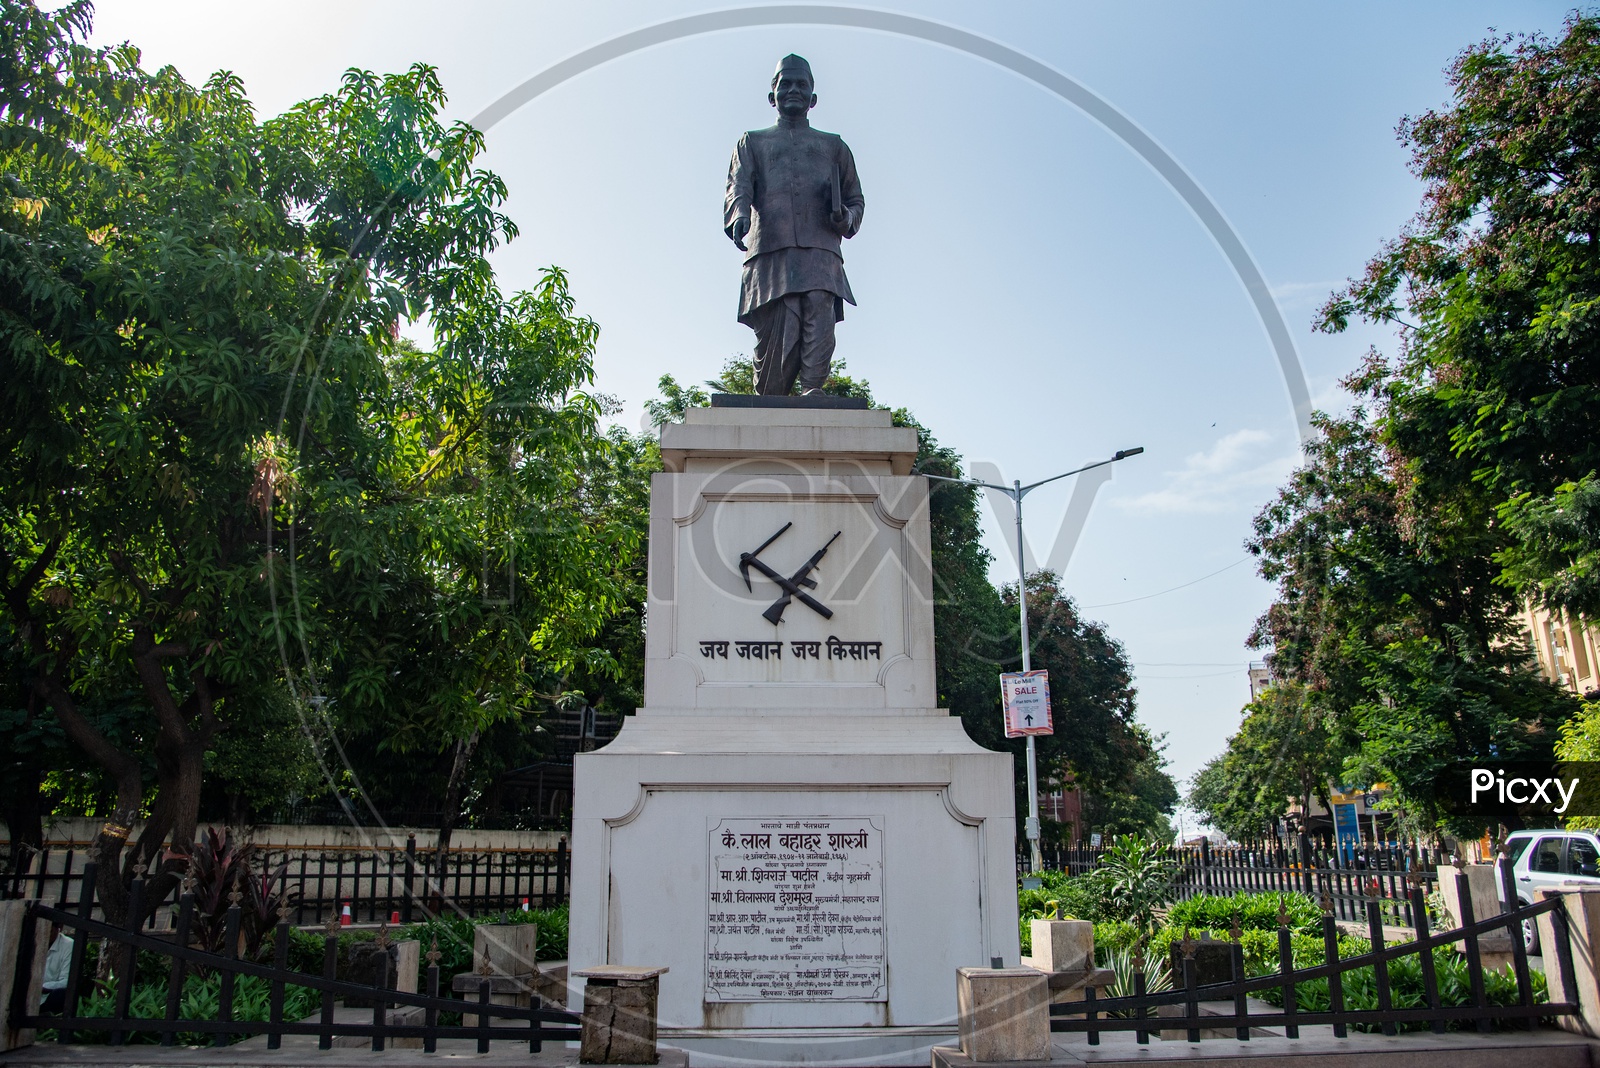 Statue of Lal Bahadur Sastry - Jai Jawan Jai Kisan